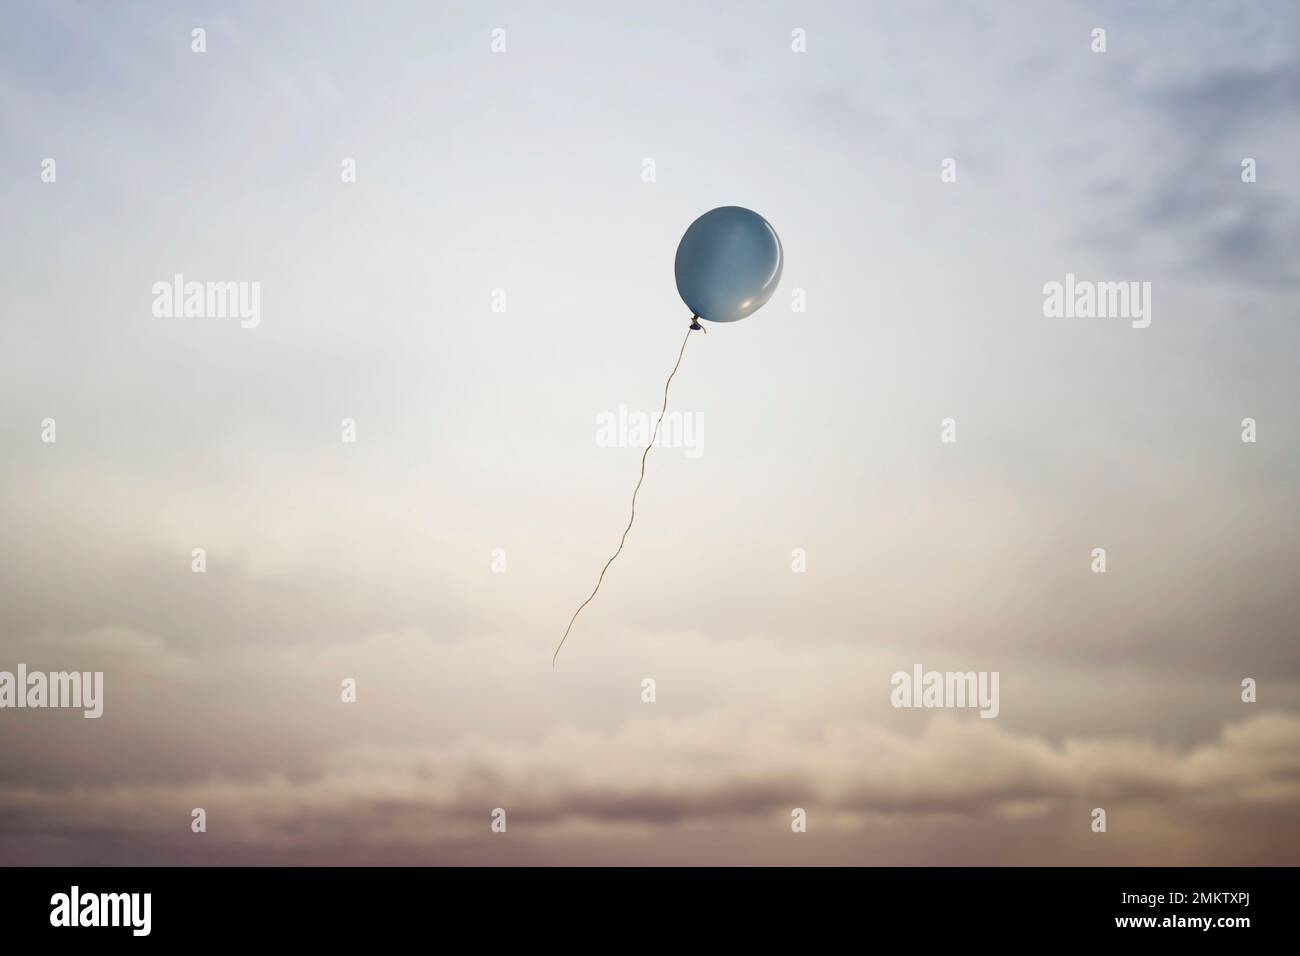 voyage surréaliste d'un ballon volant dans le ciel vers la liberté, concept de légèreté de l'esprit des rêveurs Banque D'Images